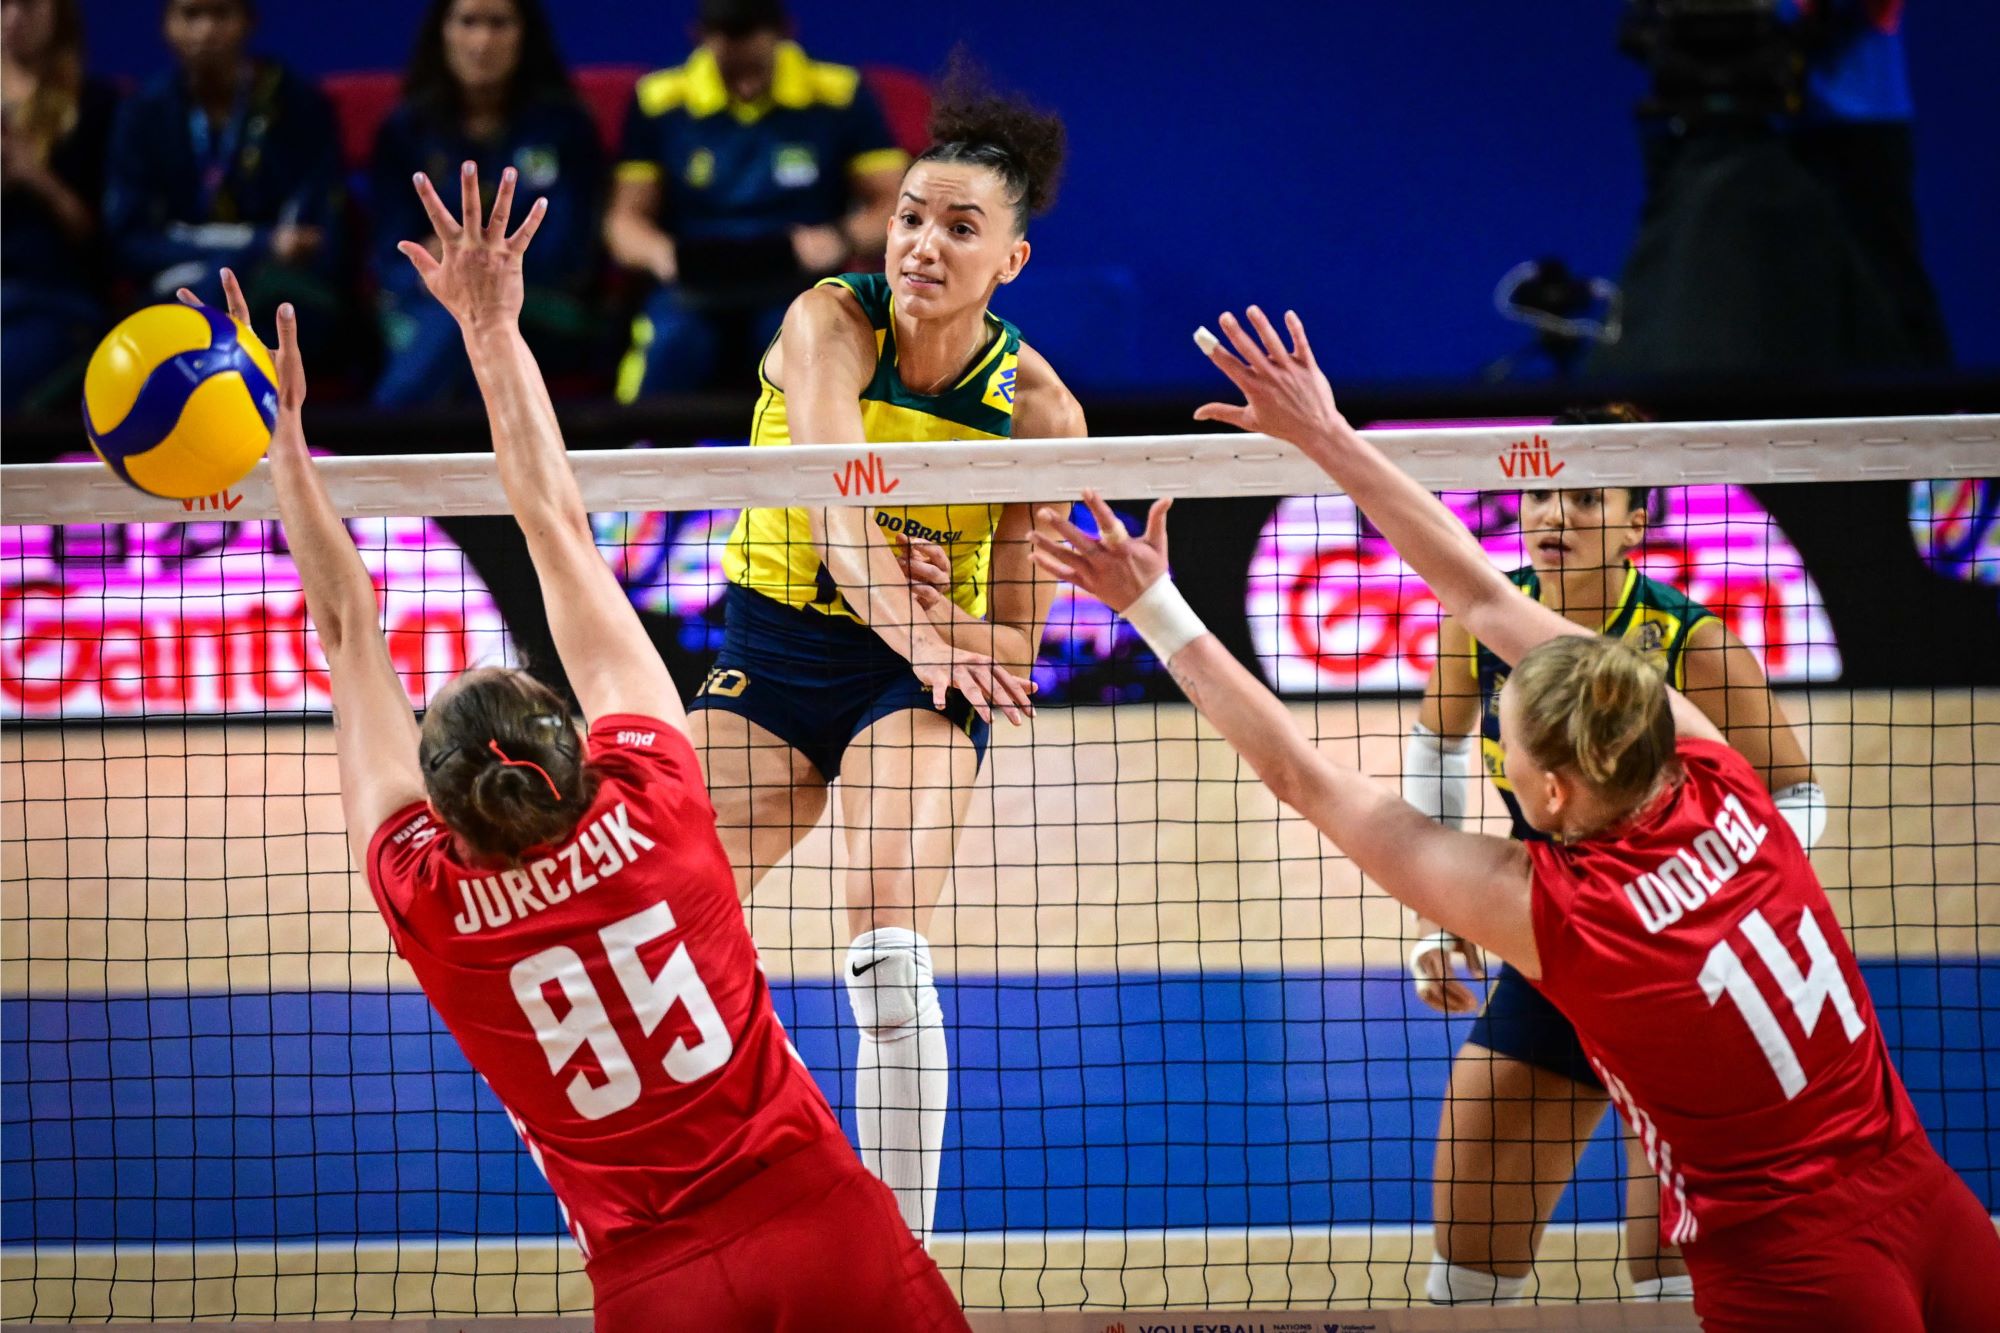 Бразилия побеждает Польшу в захватывающем матче Лиги наций по волейболу